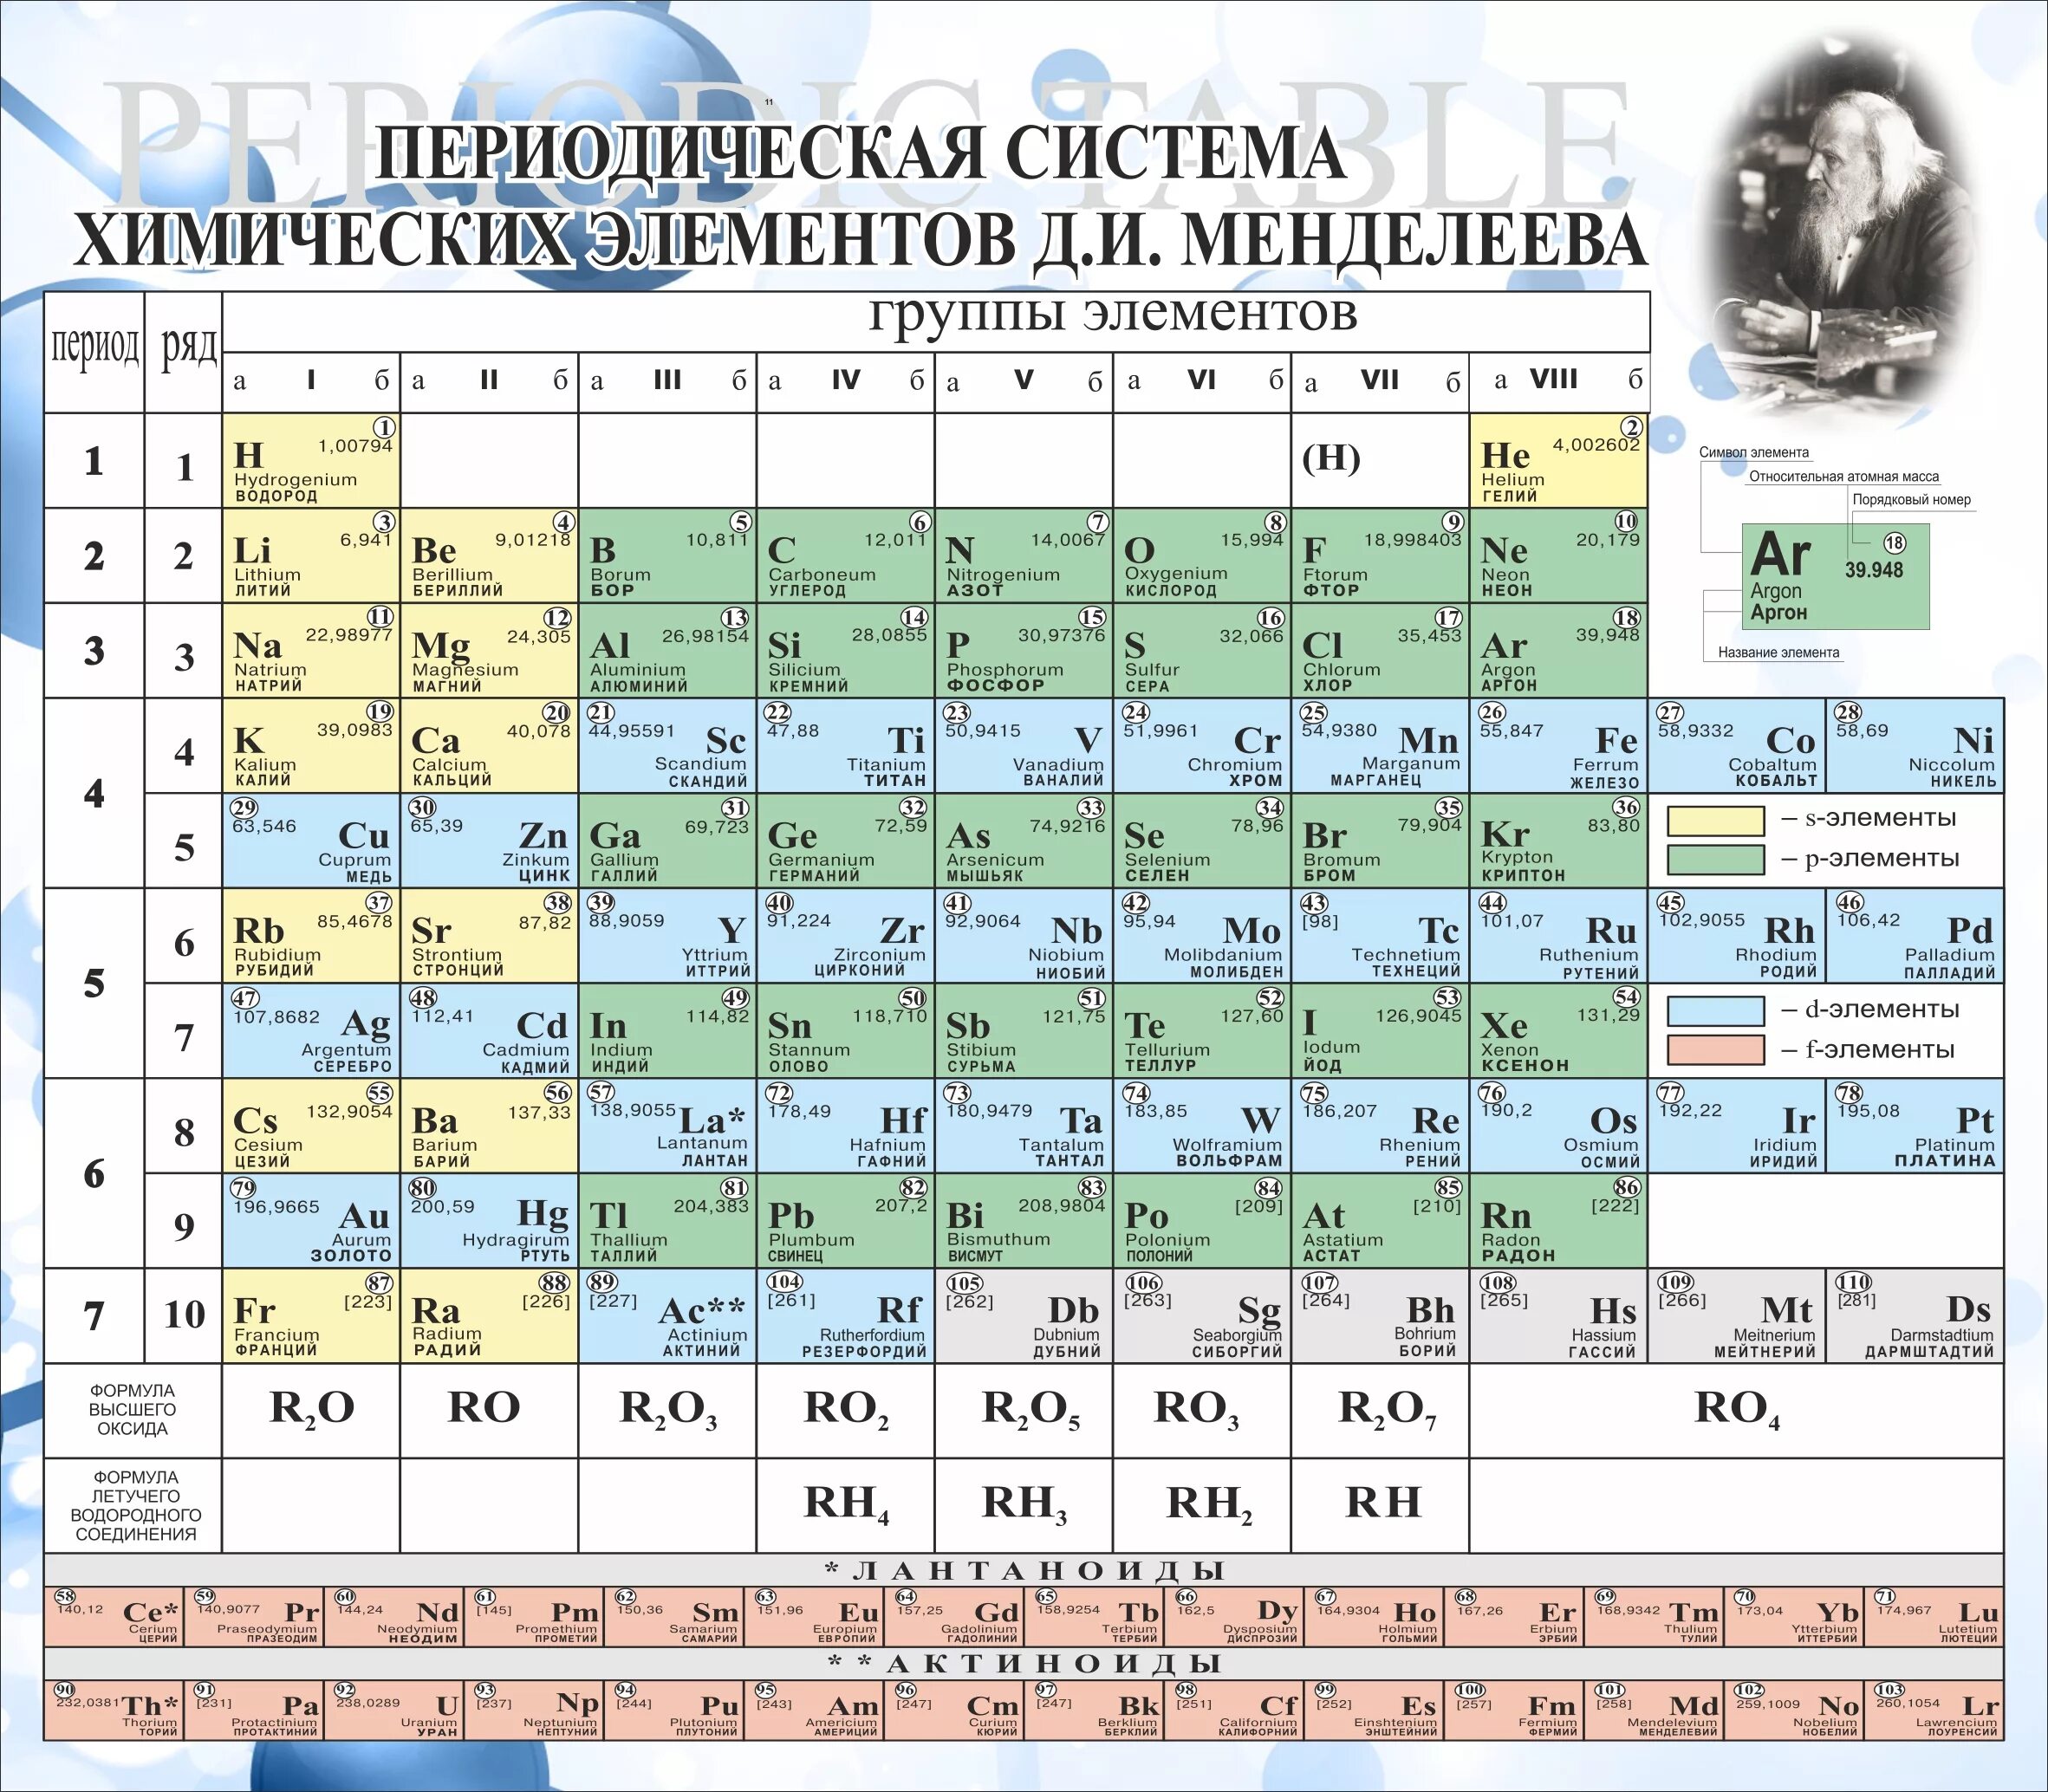 Русское название химических элементов. Таблица химических элементов с названиями. Произношение хим элементов таблица Менделеева. Периодическая система химических элементов Менделеева 118 элементов. Латинские названия химических элементов таблицы Менделеева.